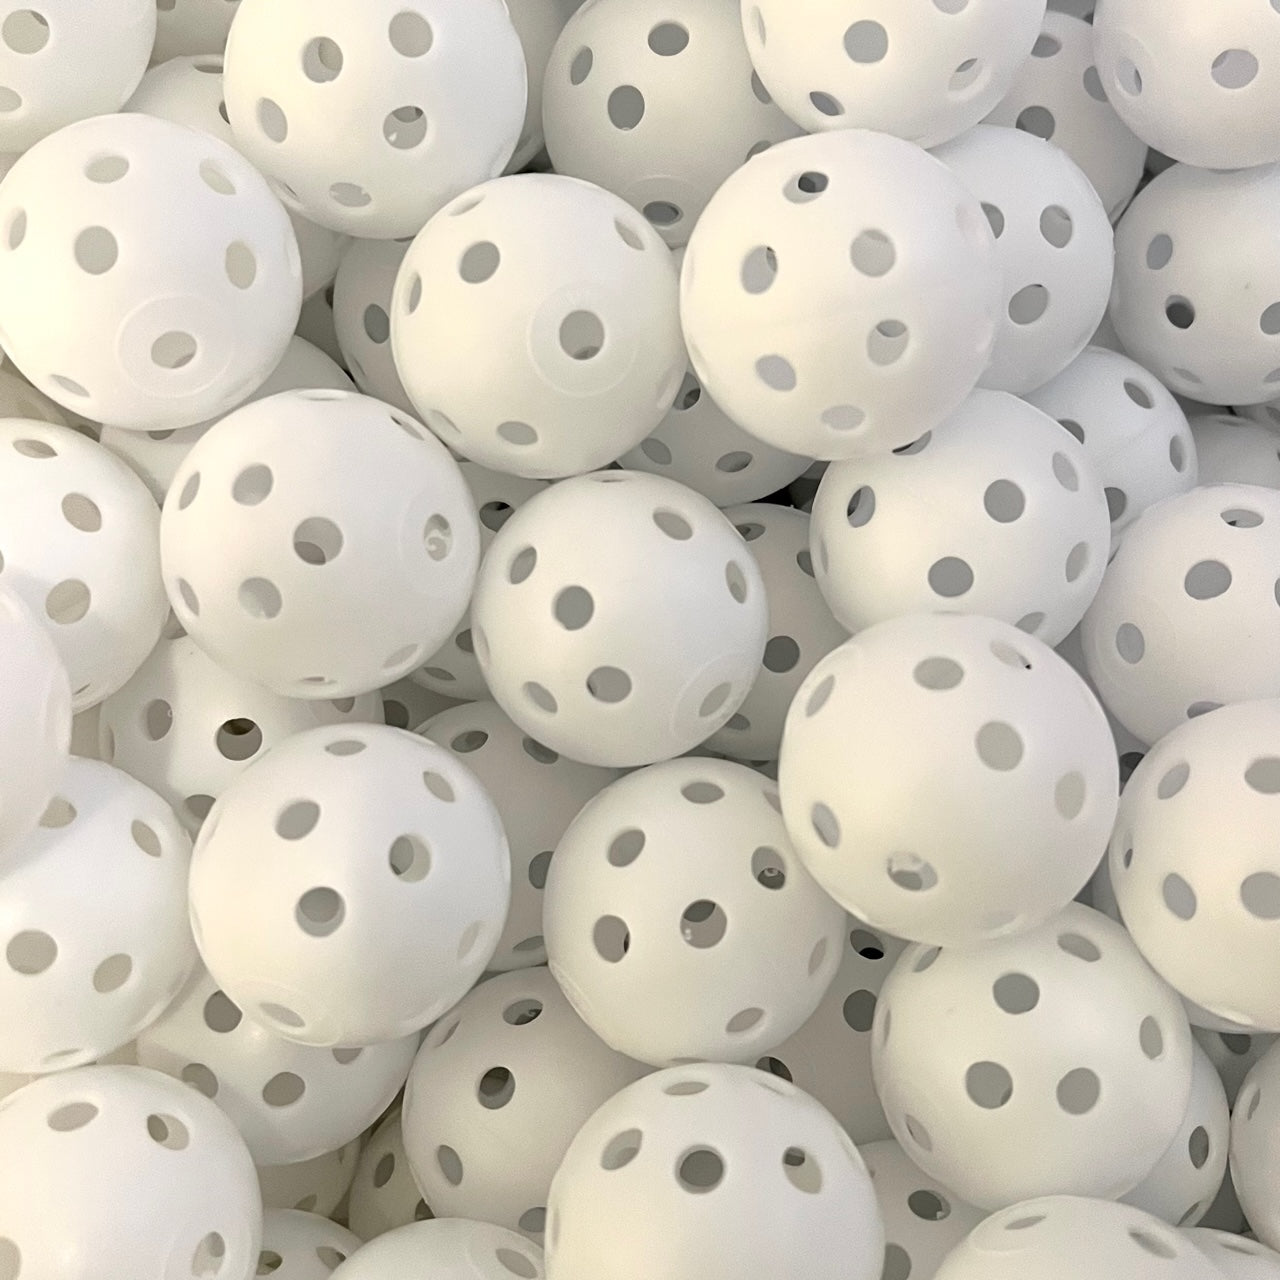 Plastic Hollow Golf Balls for Indoor/Outdoor Swing Training